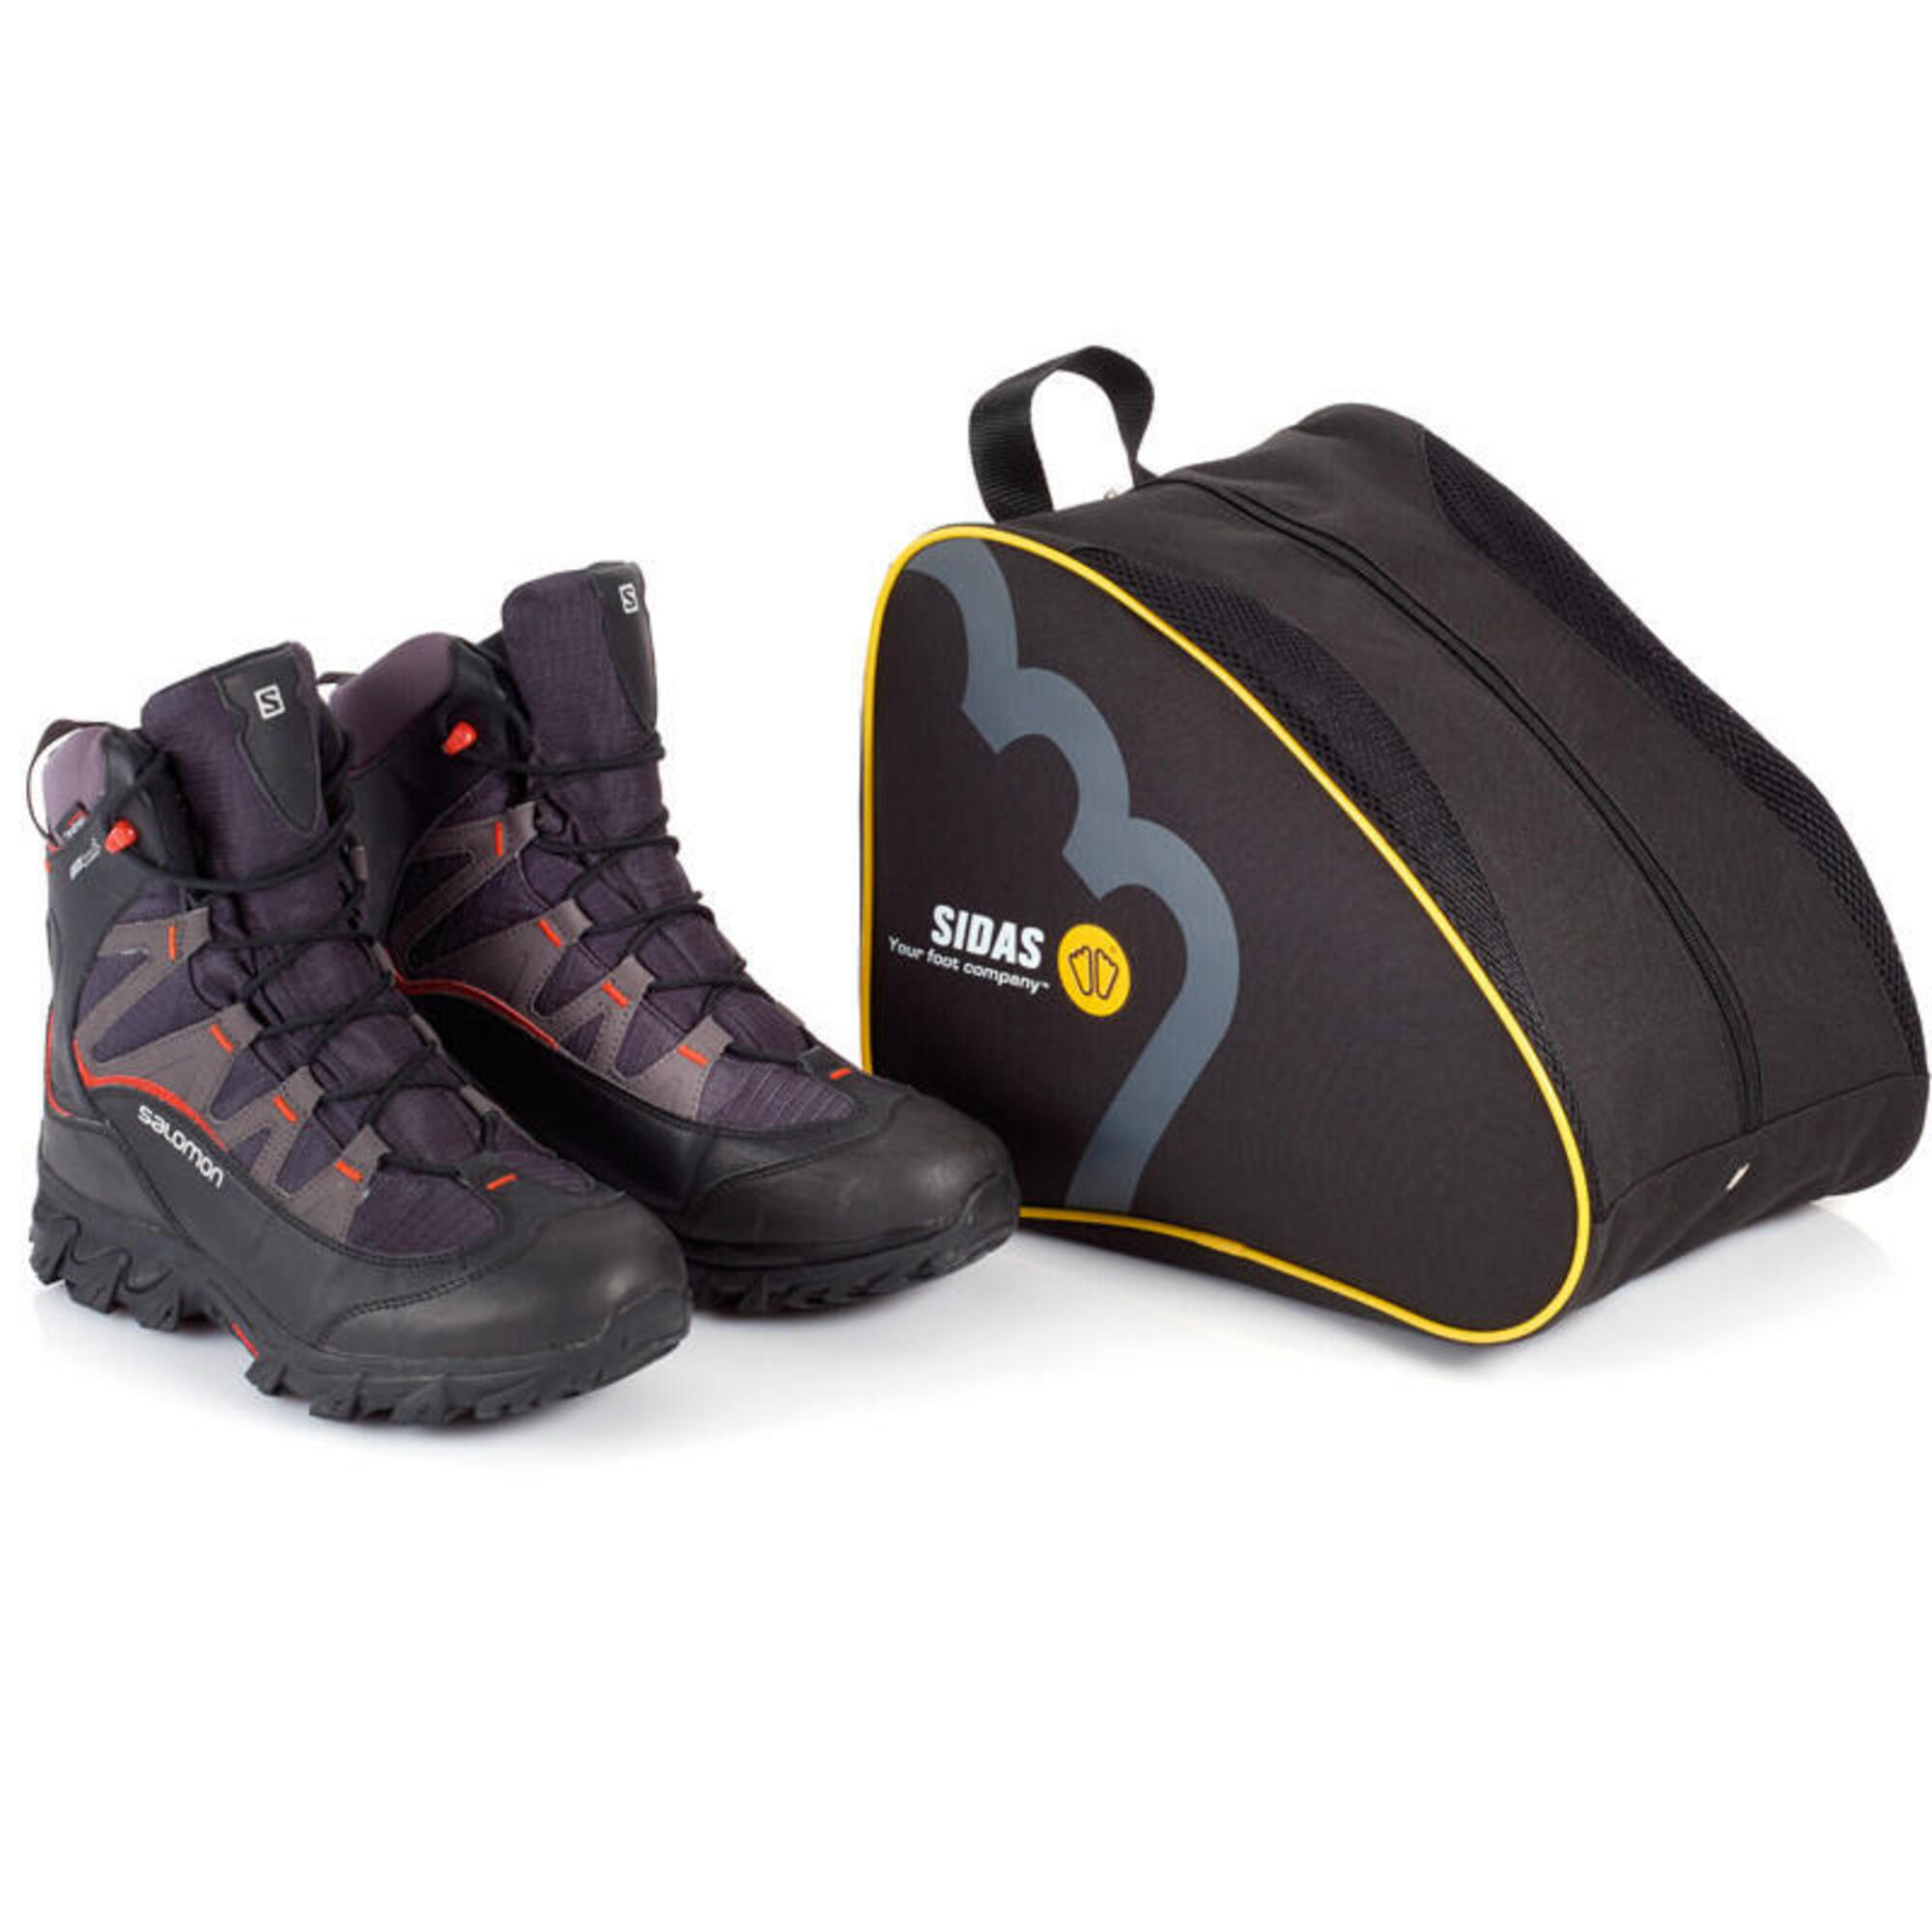 Lauf- oder Wanderschuh Tasche - Nylon Shoe Bag Black